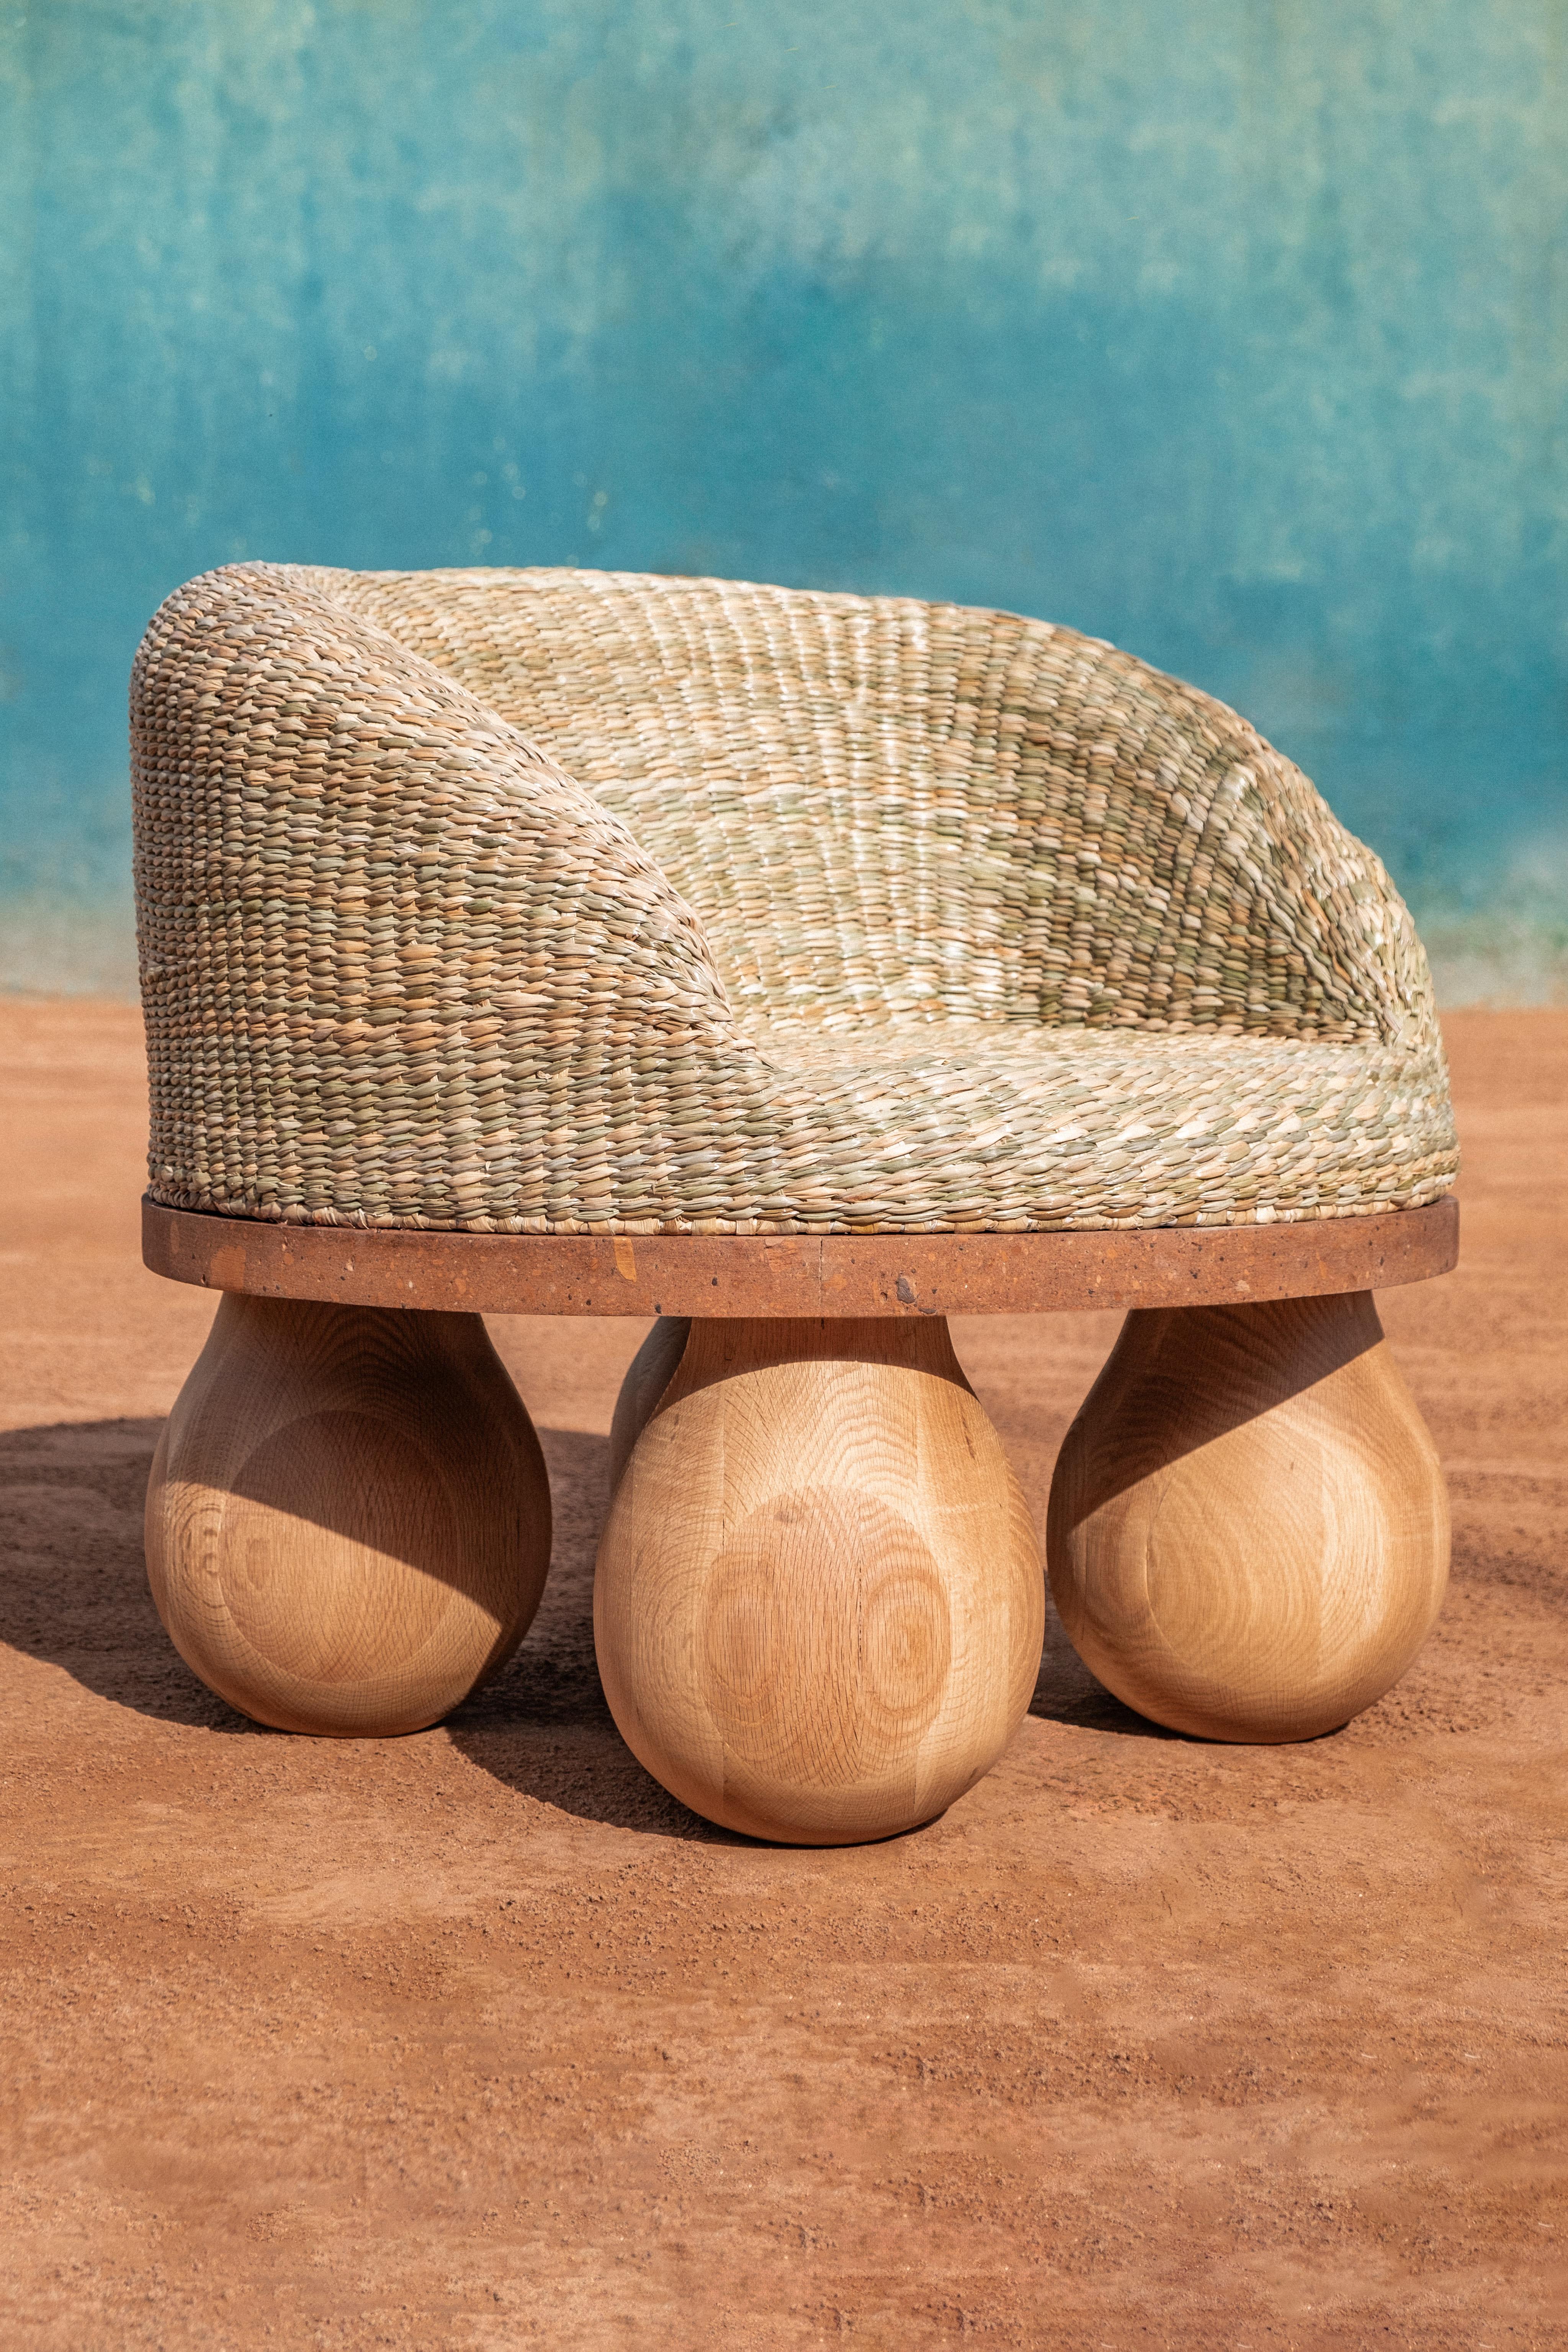 Waje-Stuhl von Comuna MX
Abmessungen: B 80 x T 80 x H 75 cm
MATERIALIEN: Orange Cantera Stein, Chuspata Weben.  
Gewicht: 50 kg.

Einige Teile dieses Produkts sind handgefertigt und können daher in Farbe, Form, Textur und Größe variieren.
Waje ist